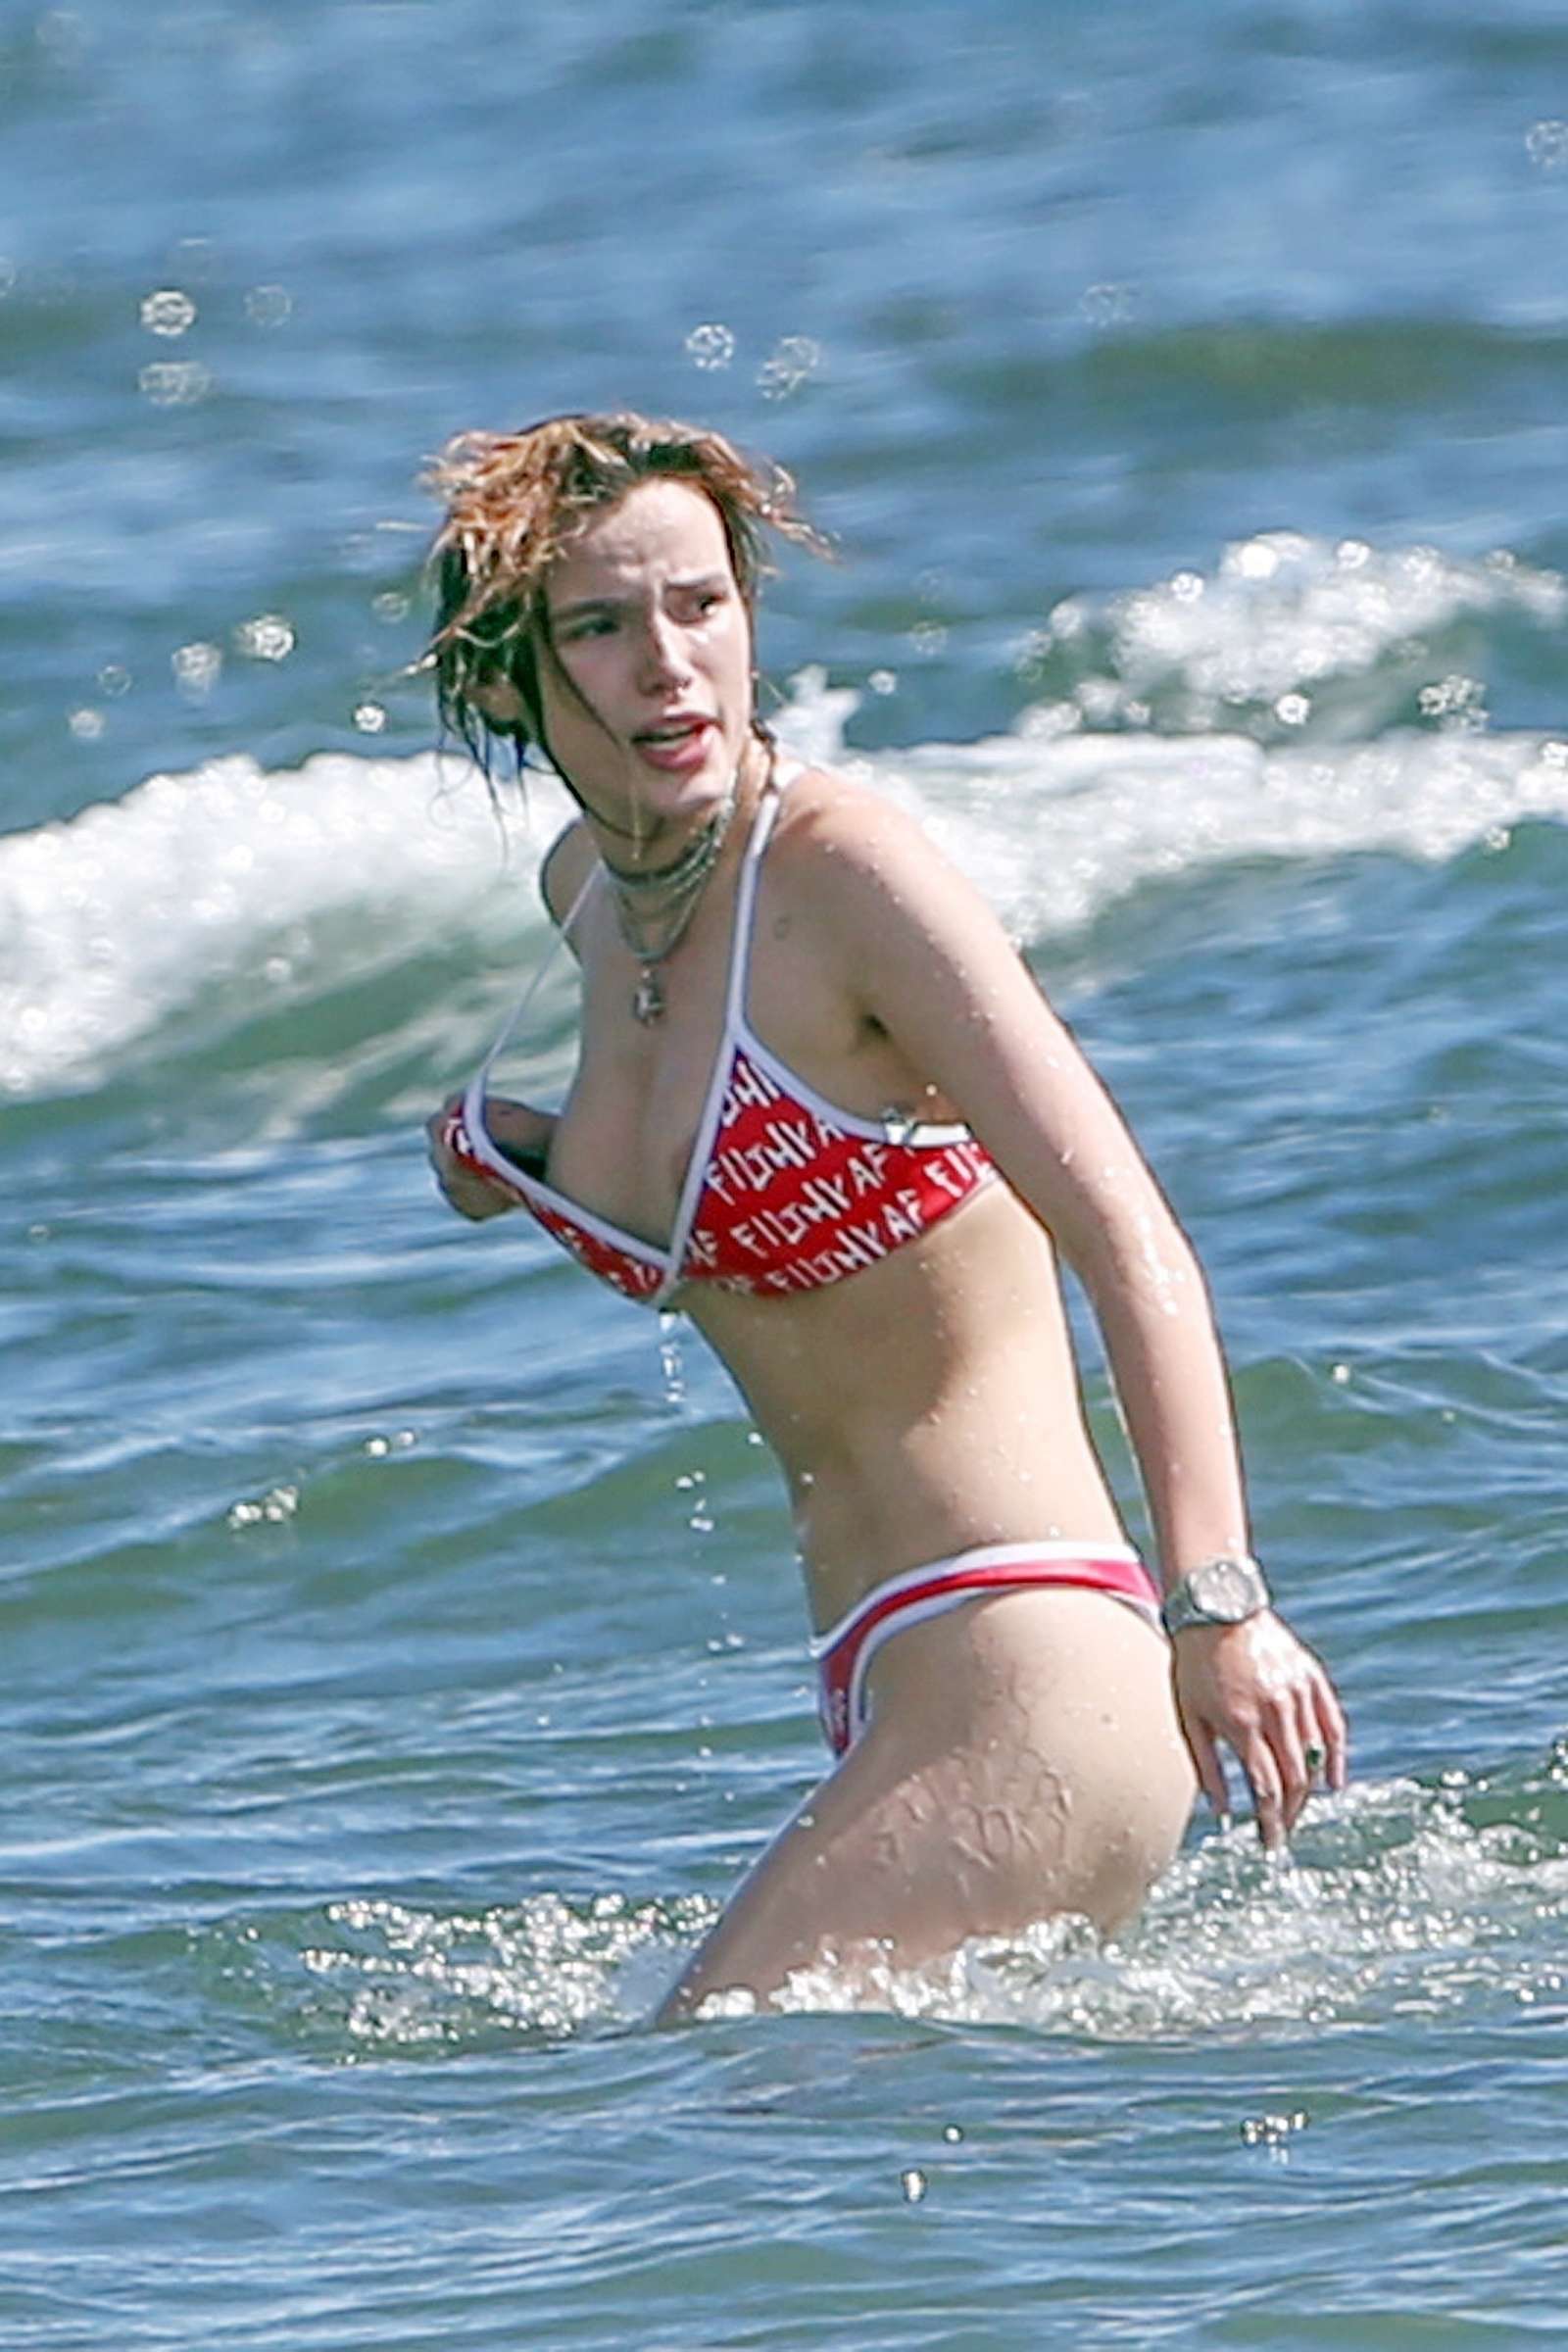 Bella Thorne in Bikini on the beach in Hawaii